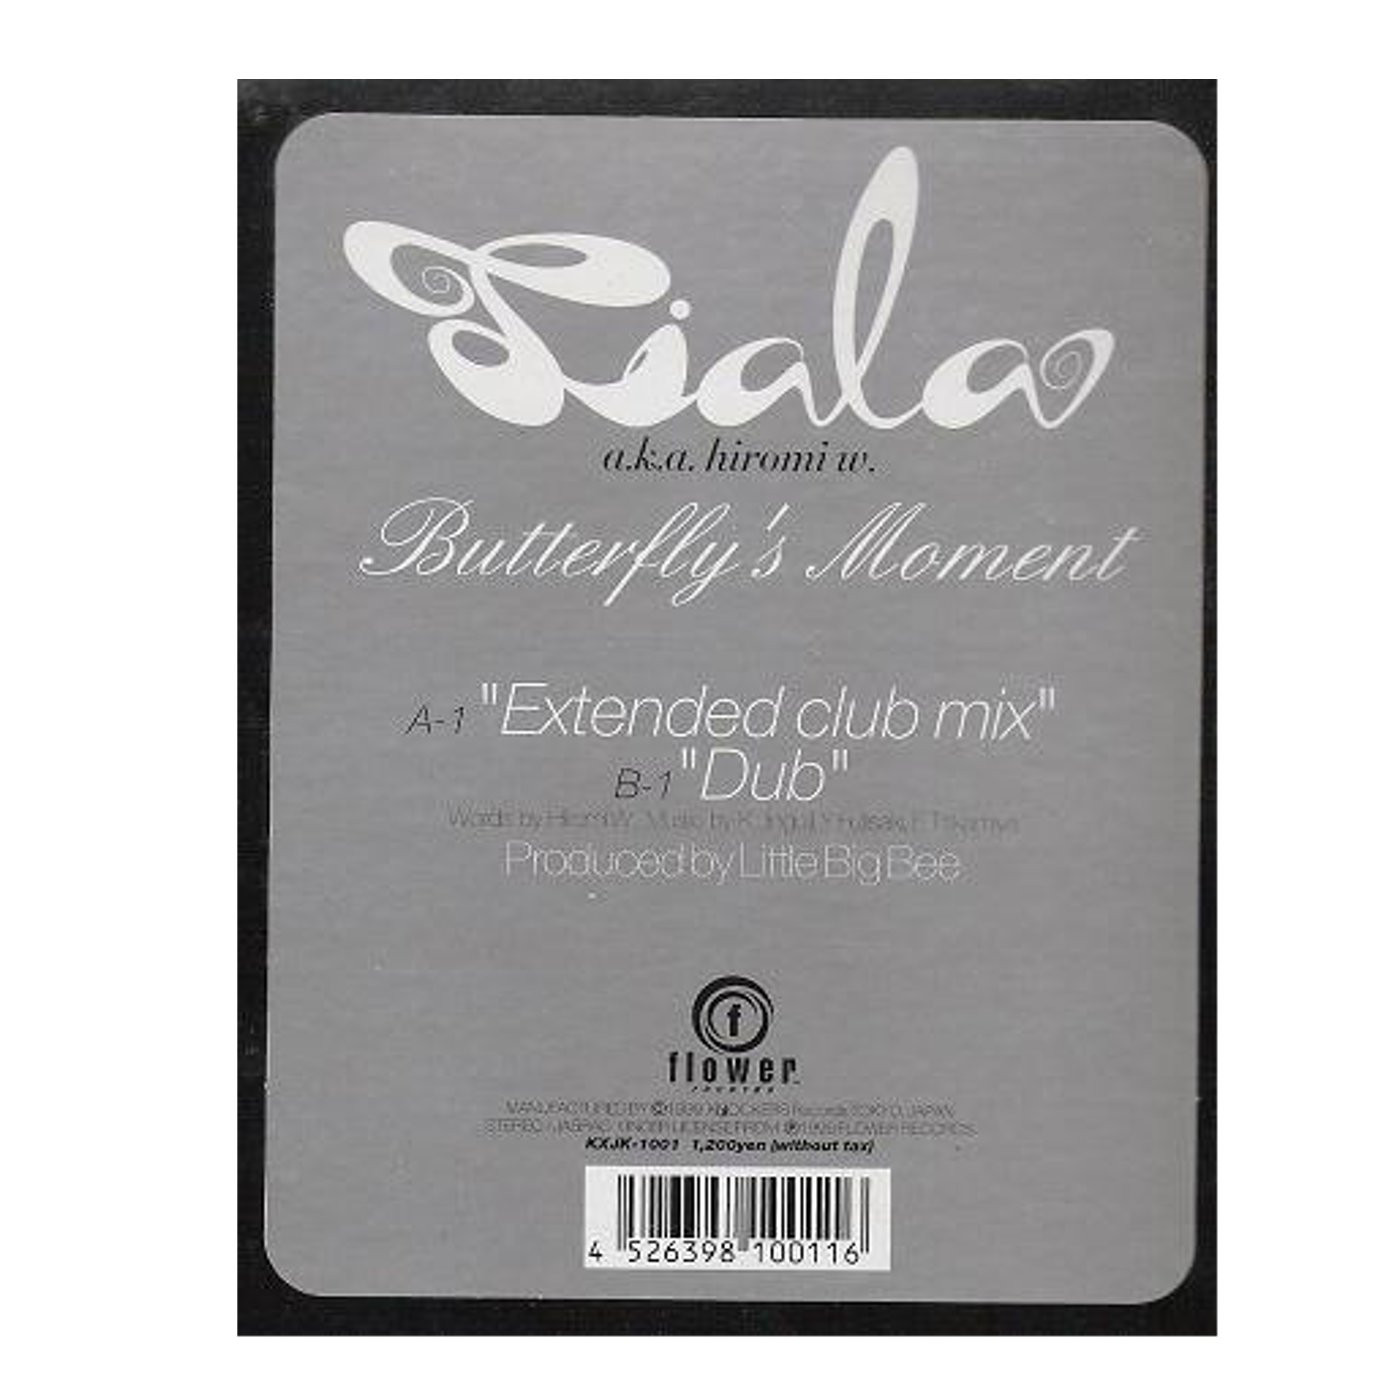 Tiala - Butterflys moment (Extended Club mix / Dub) 12" Vinyl Record